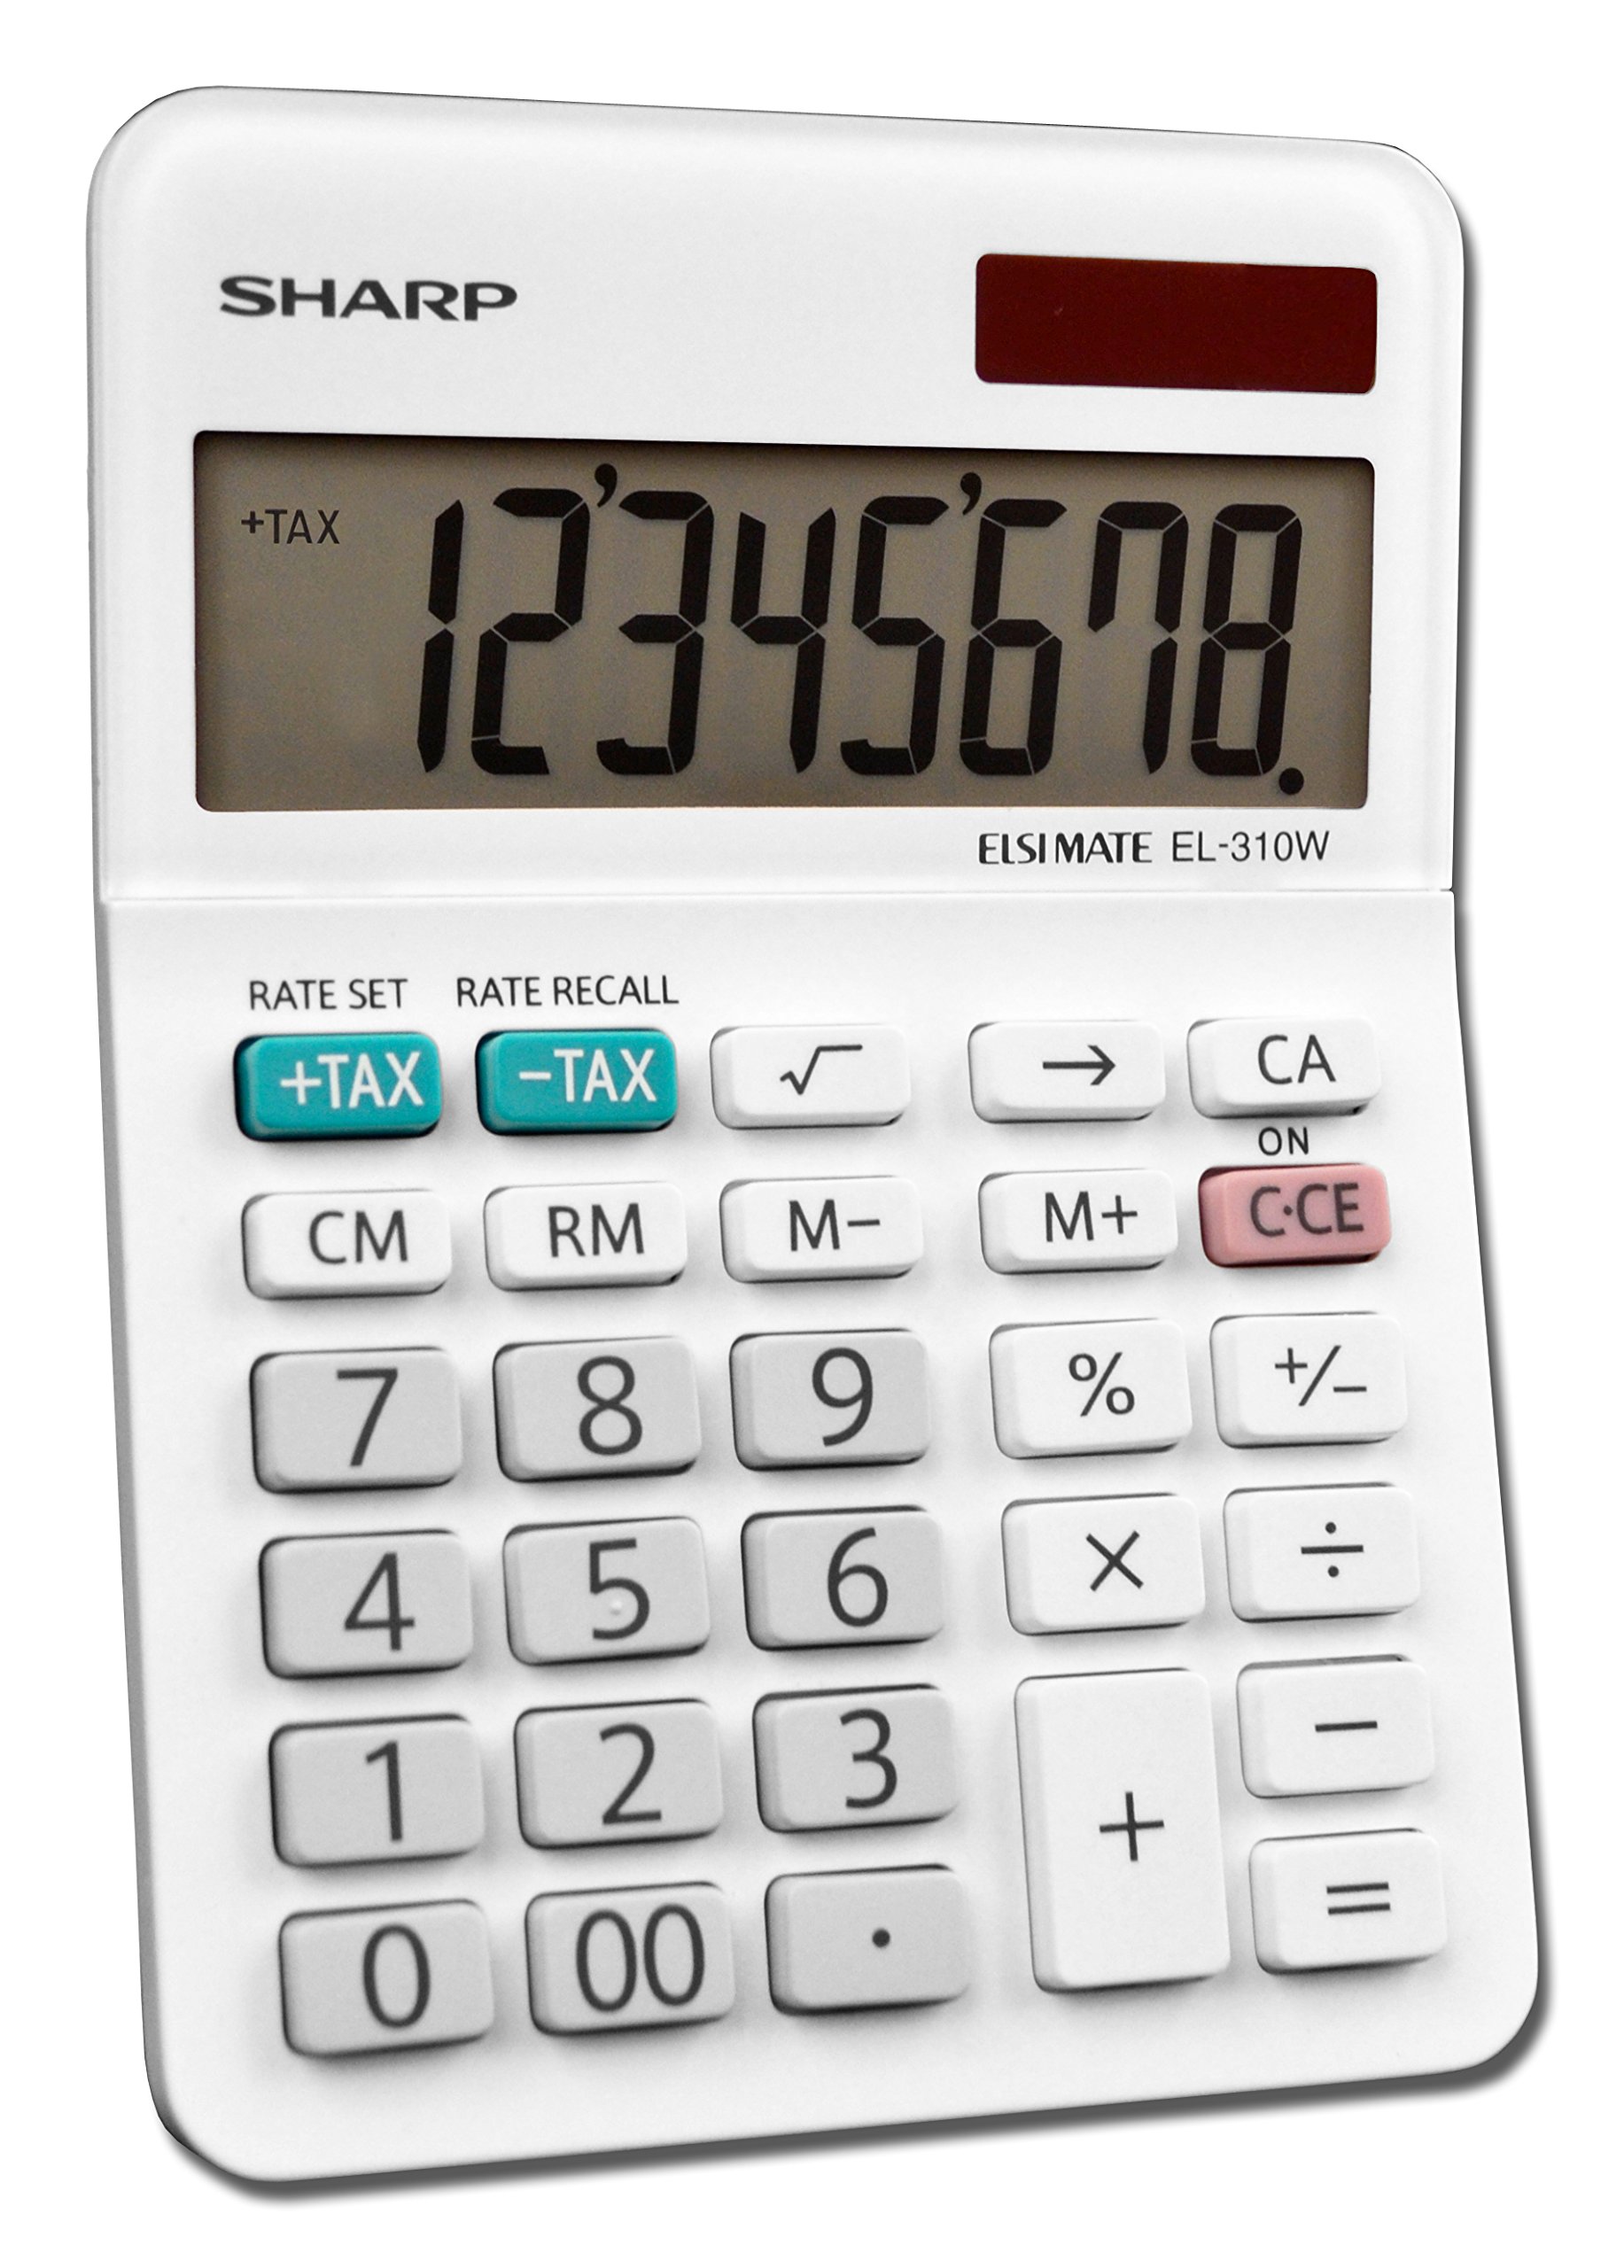 Sharp EL-310WB Calculator, White 3.125, 3.38 x 4.75 x 1.0 inches